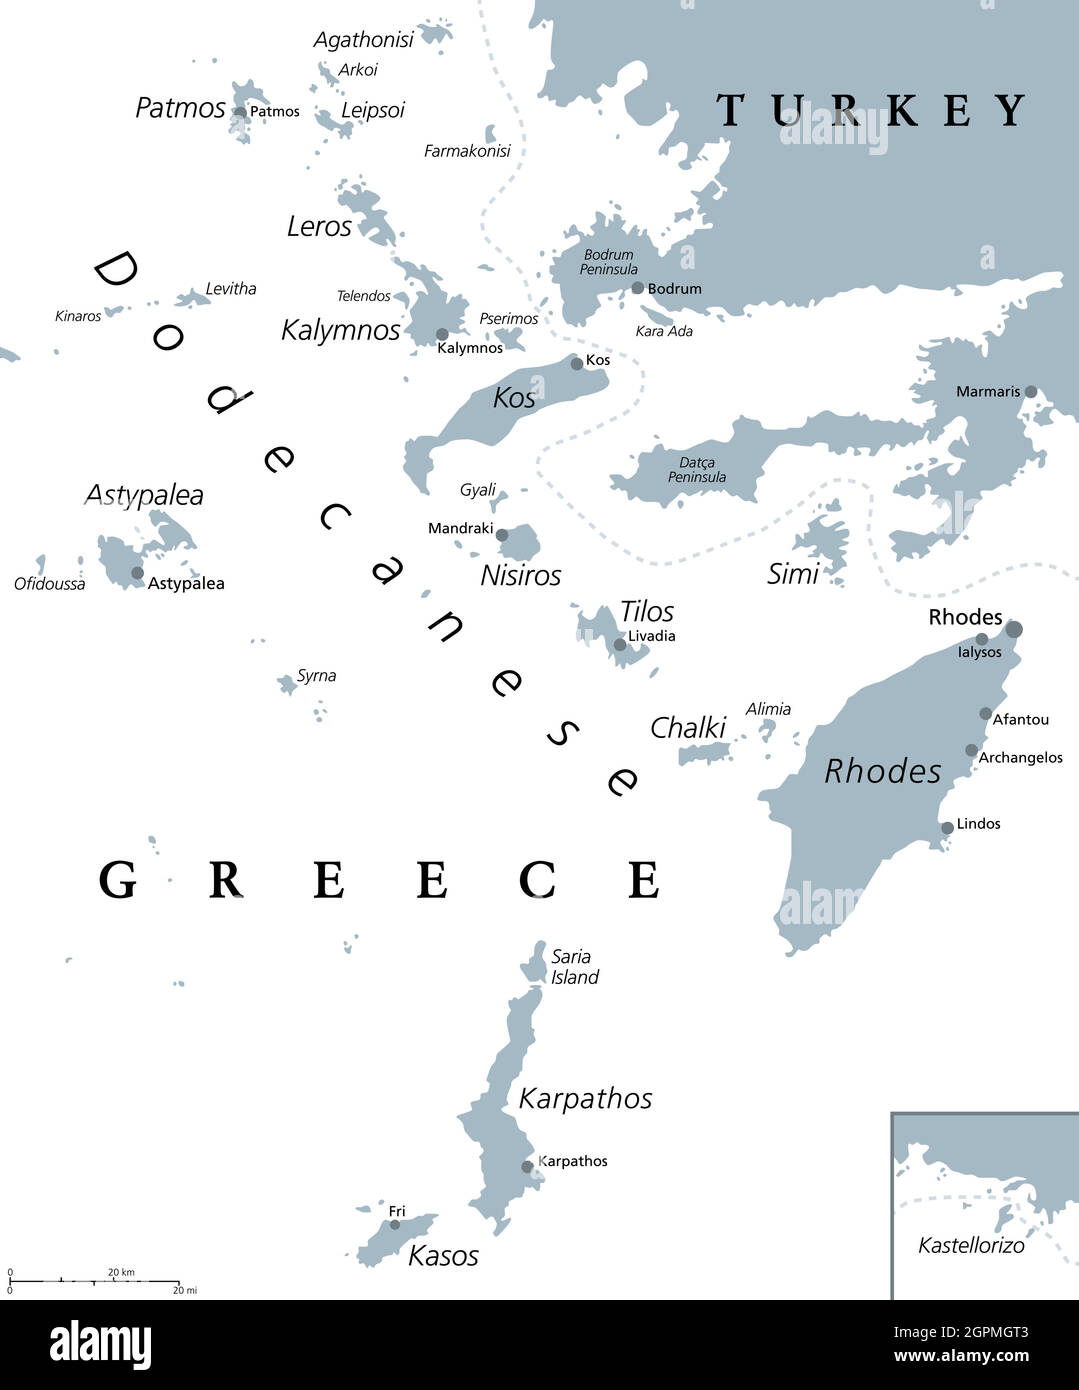 Isole Dodecanesi, gruppo insulare greco, mappa politica grigia Illustrazione Vettoriale